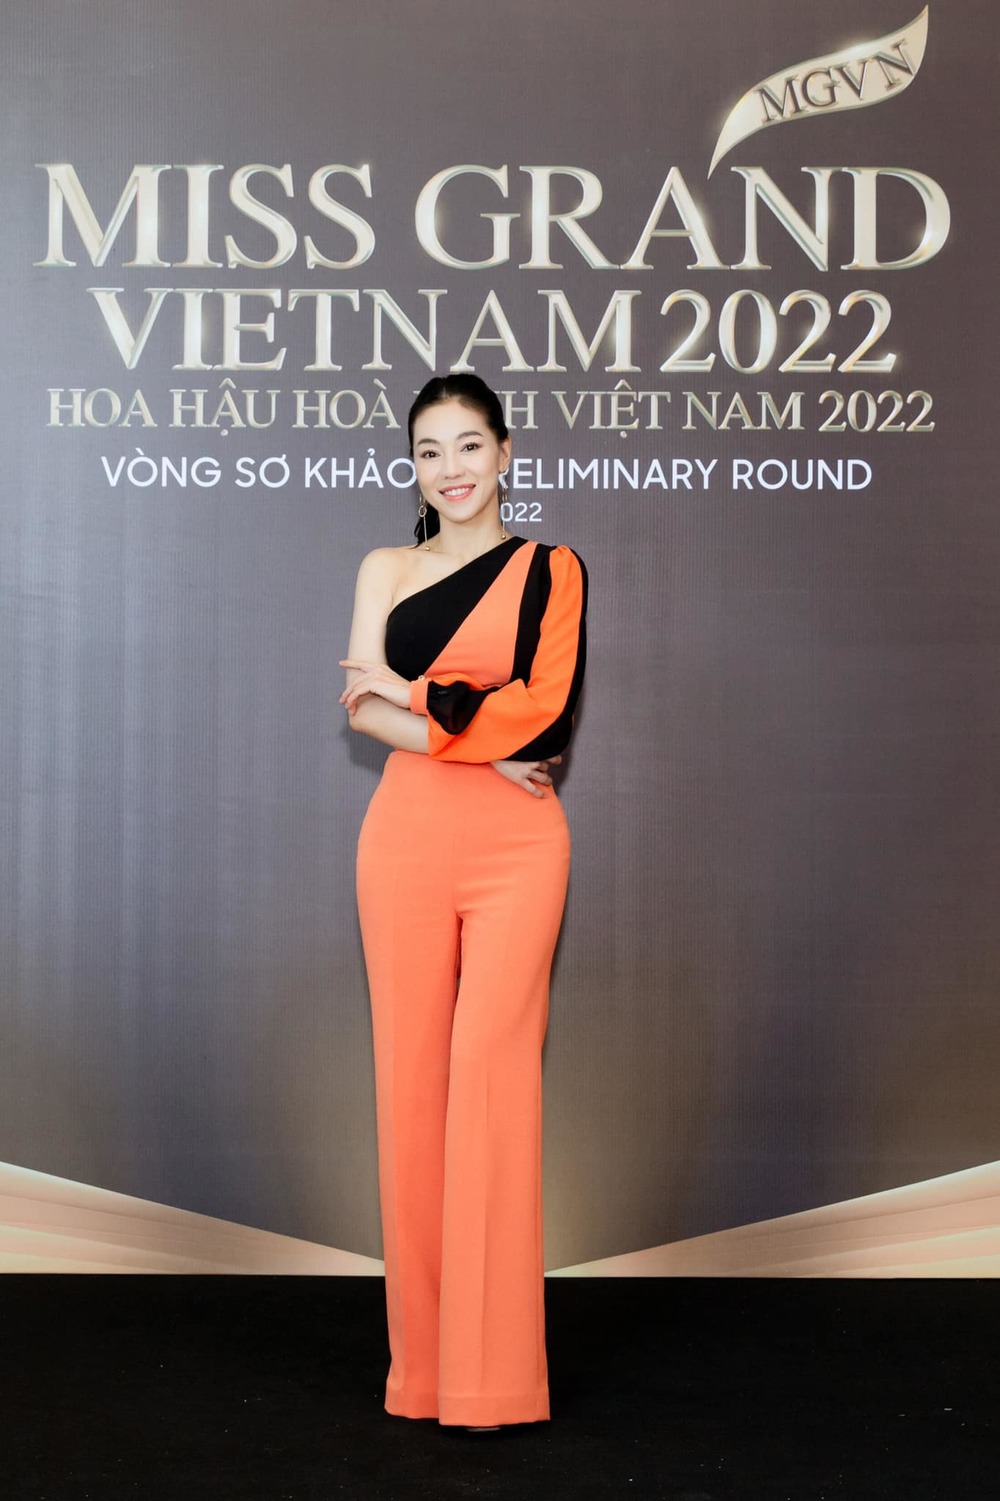 BTC MGVN chuẩn bị sẵn váy áo cho Tân Hoa hậu đi thi quốc tế-2